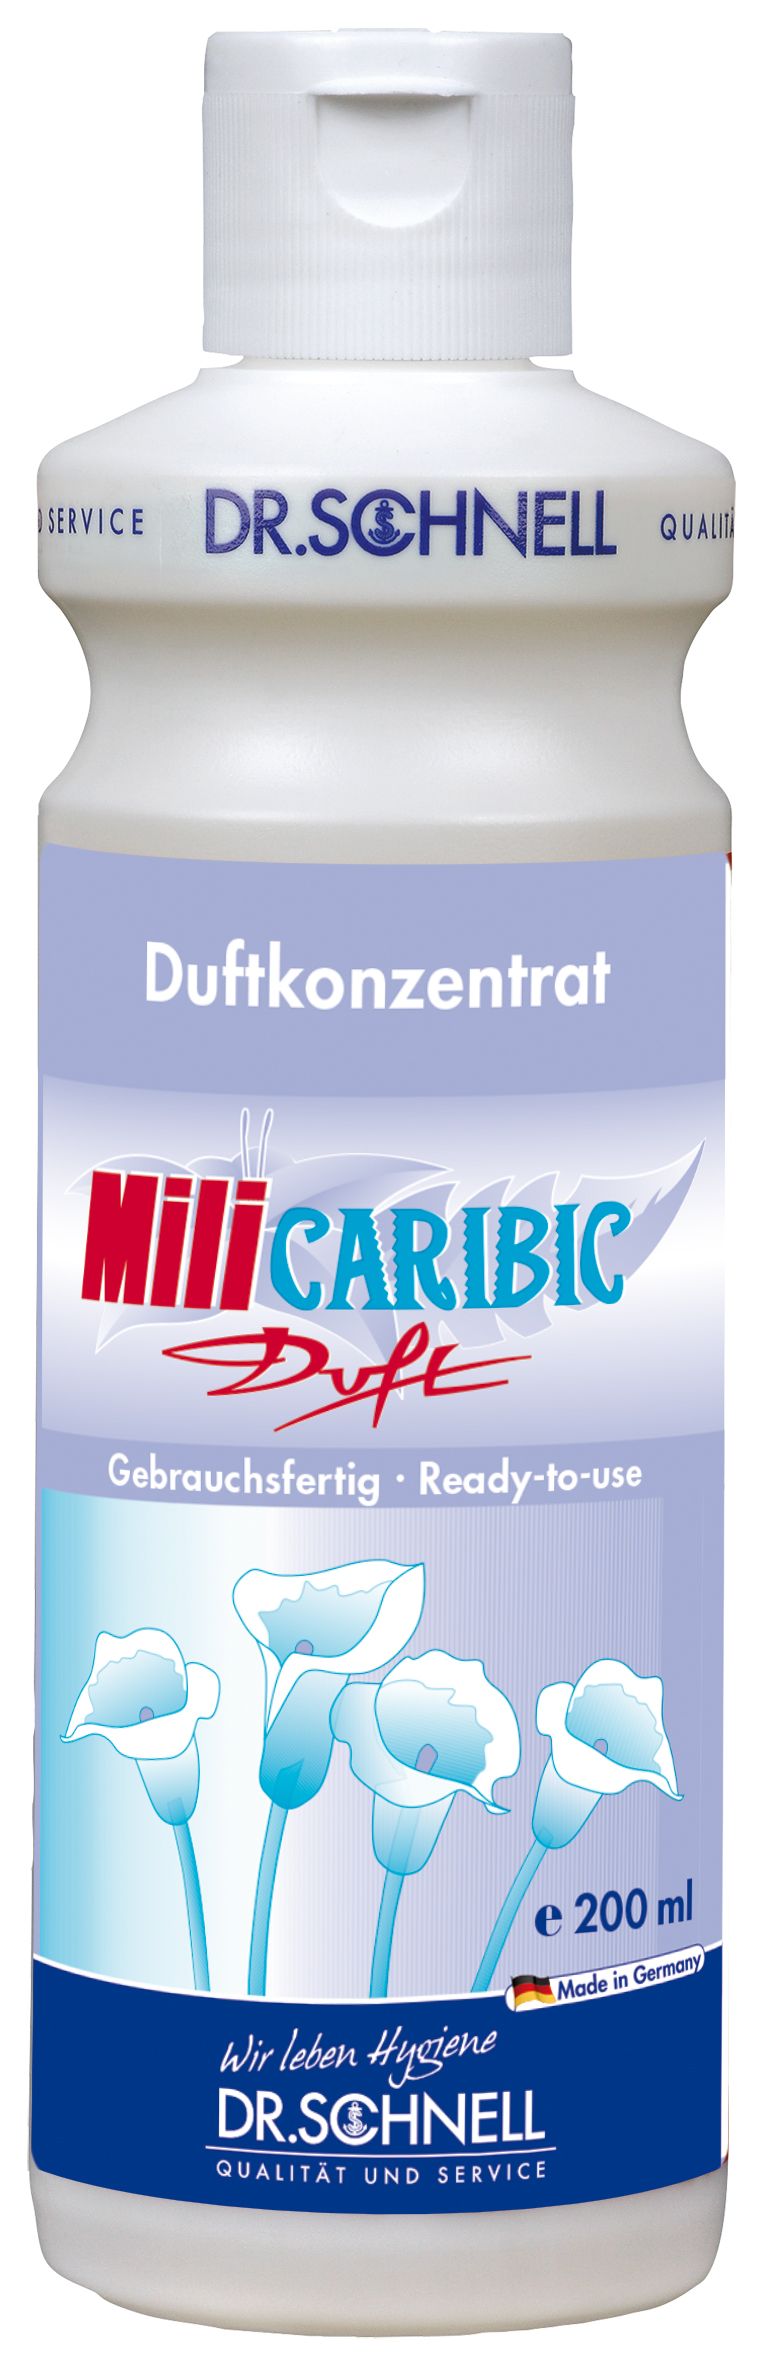 MILI-CARIBIC Duftkonzentrat 200 ml,Dr.Schnell